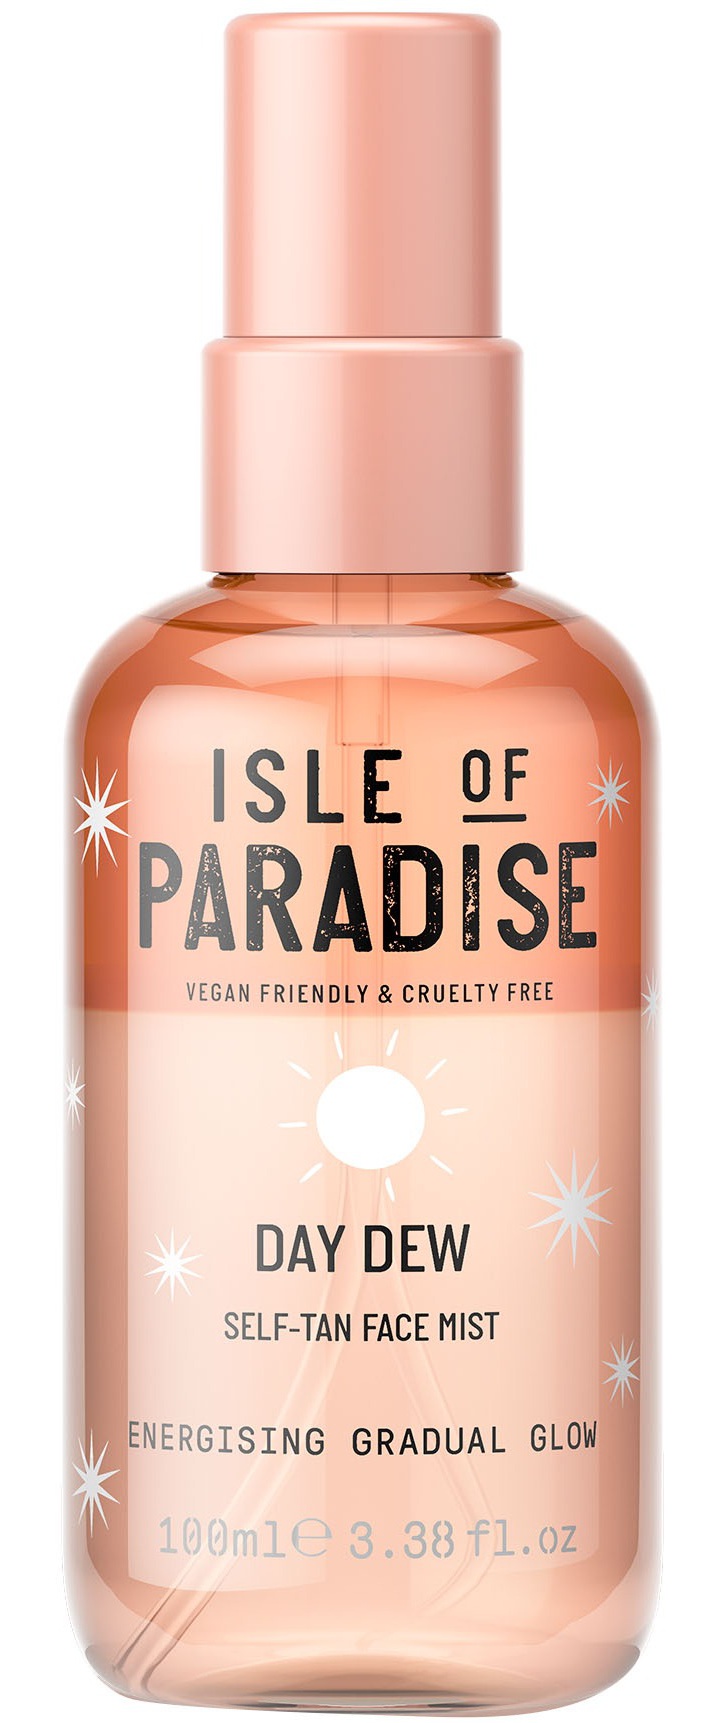 Isle of Paradise Day Dew